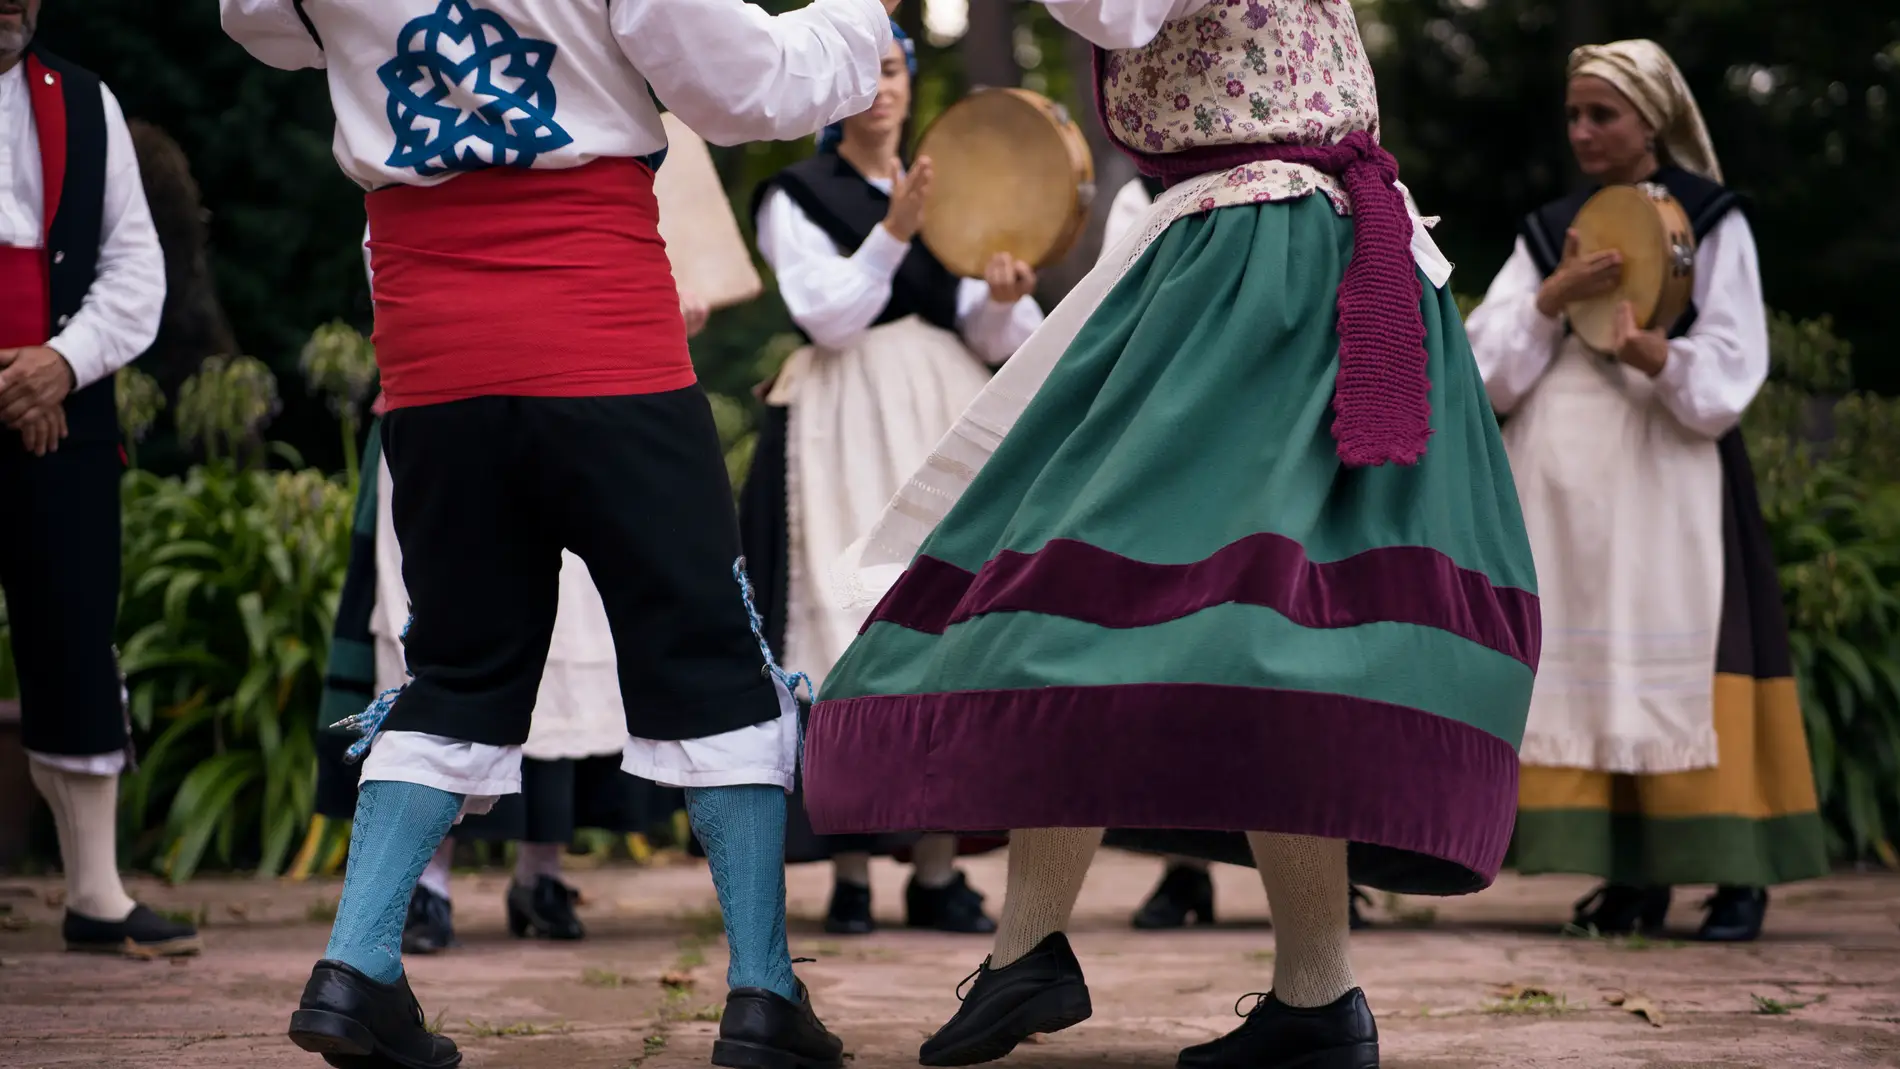 Las fiestas regionales llegan a varias comunidades españolas.